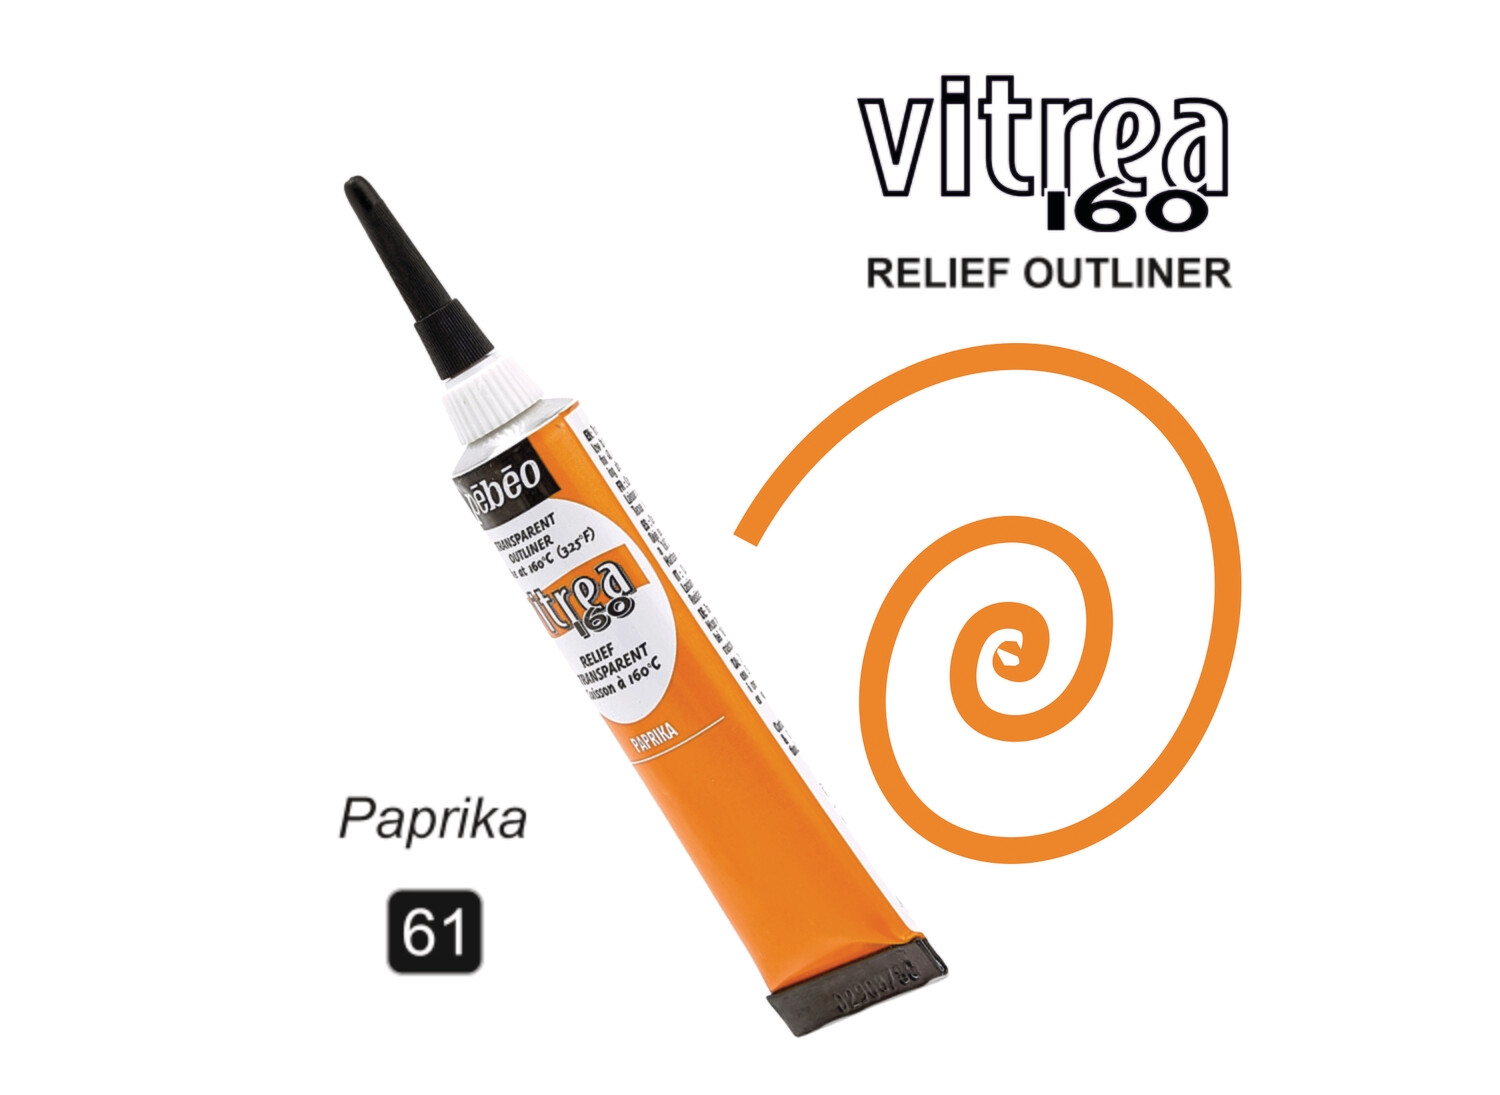 Vitrea-160 20ml 61 Paprika